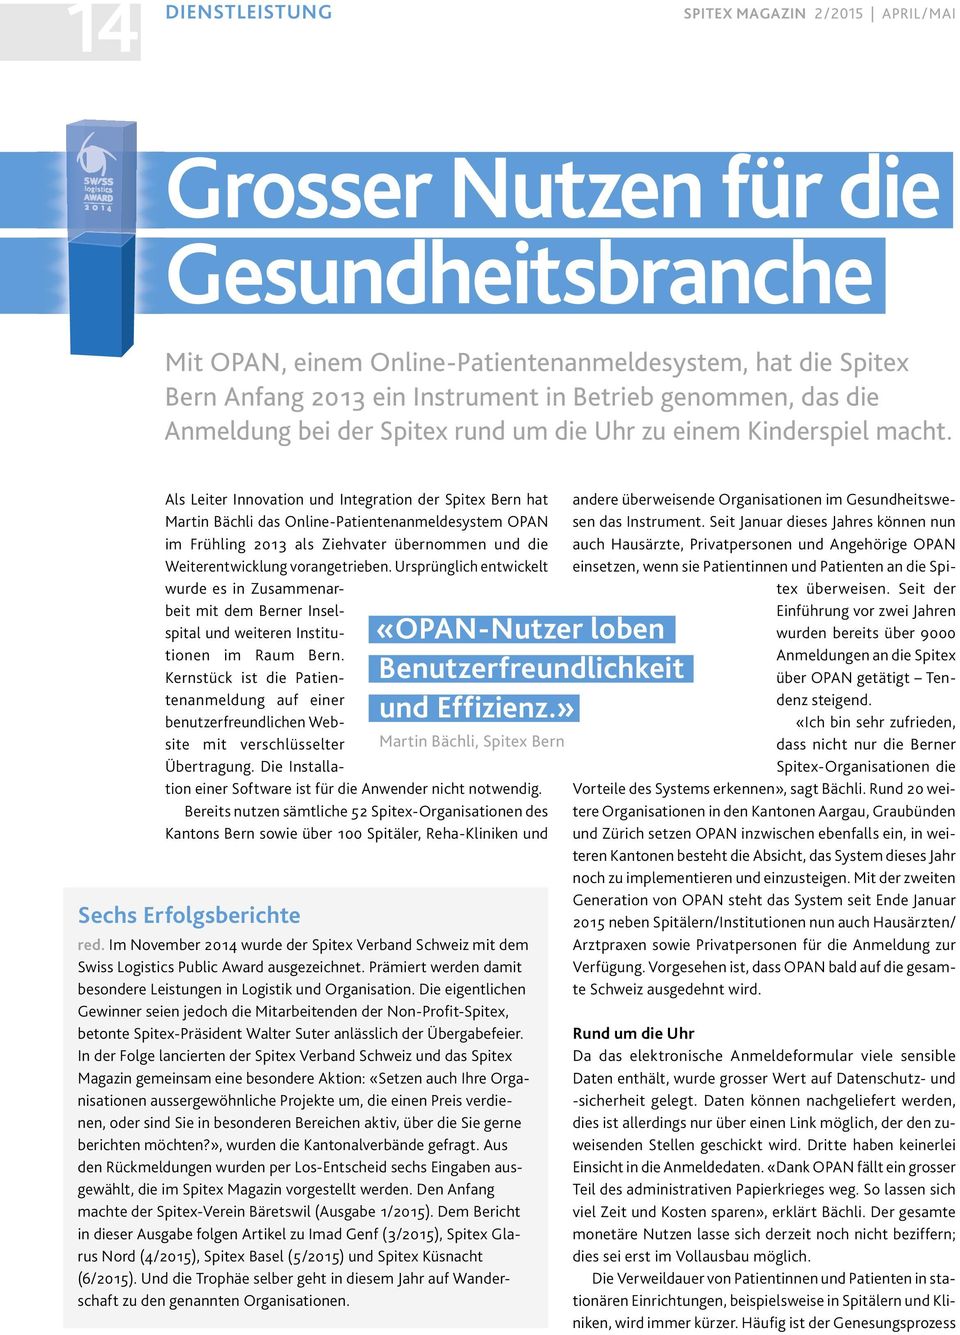 Als Leiter Innovation und Integration der Spitex Bern hat Martin Bächli das Online-Patientenanmeldesystem OPAN im Frühling 2013 als Ziehvater übernommen und die Weiterentwicklung vorangetrieben.